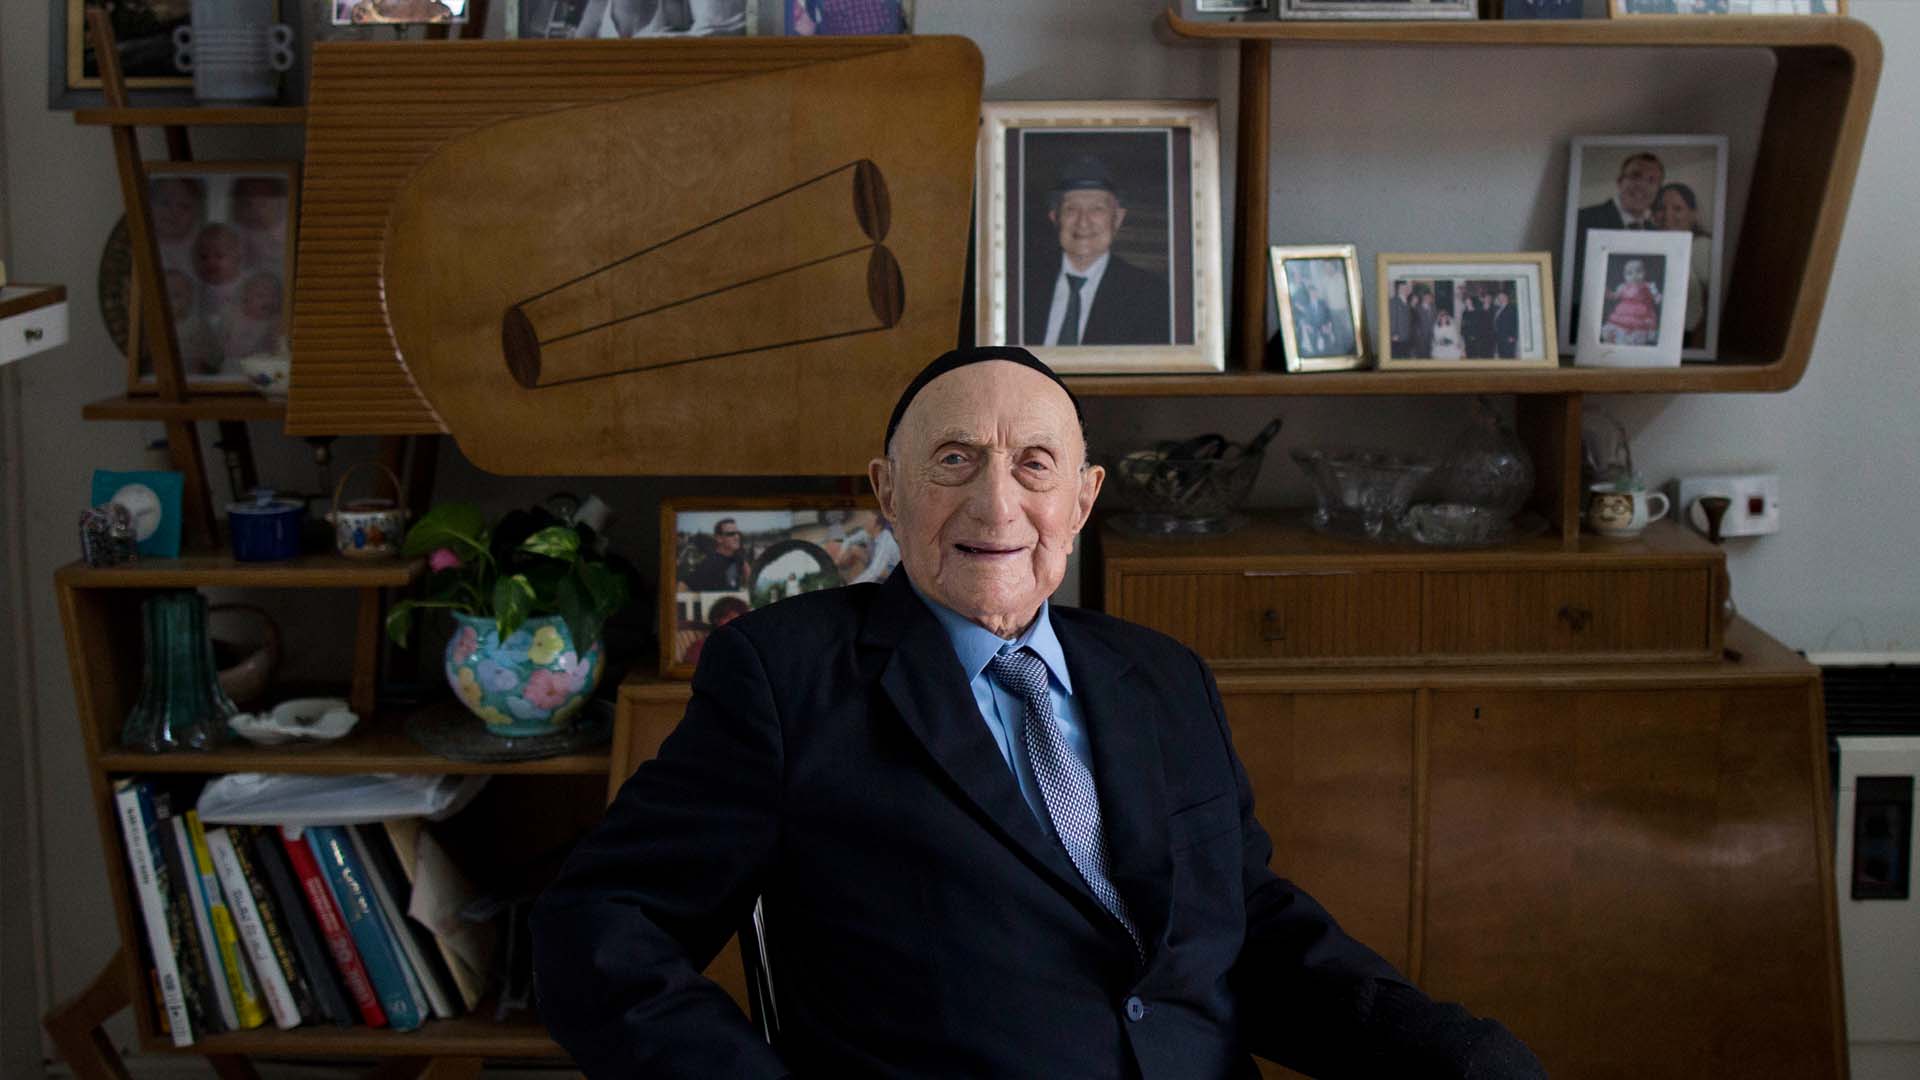 Israel Kristal, de 113 años, celebró la mayoría de edad religiosa gracias al apoyo de sus familiares